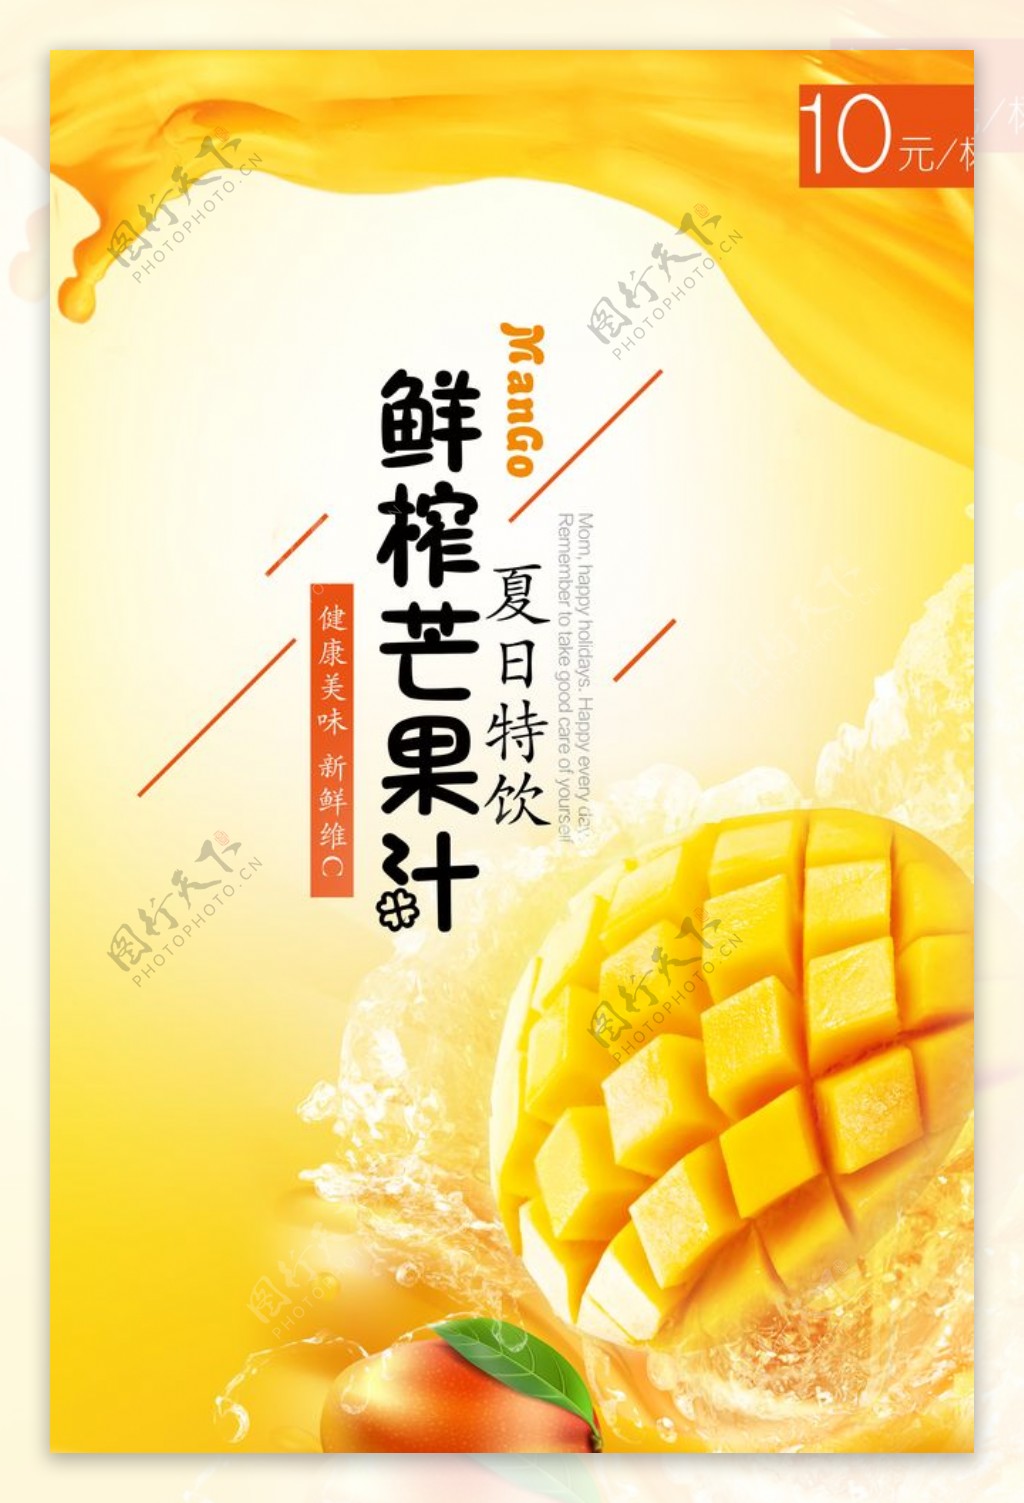 夏日芒果汁广告